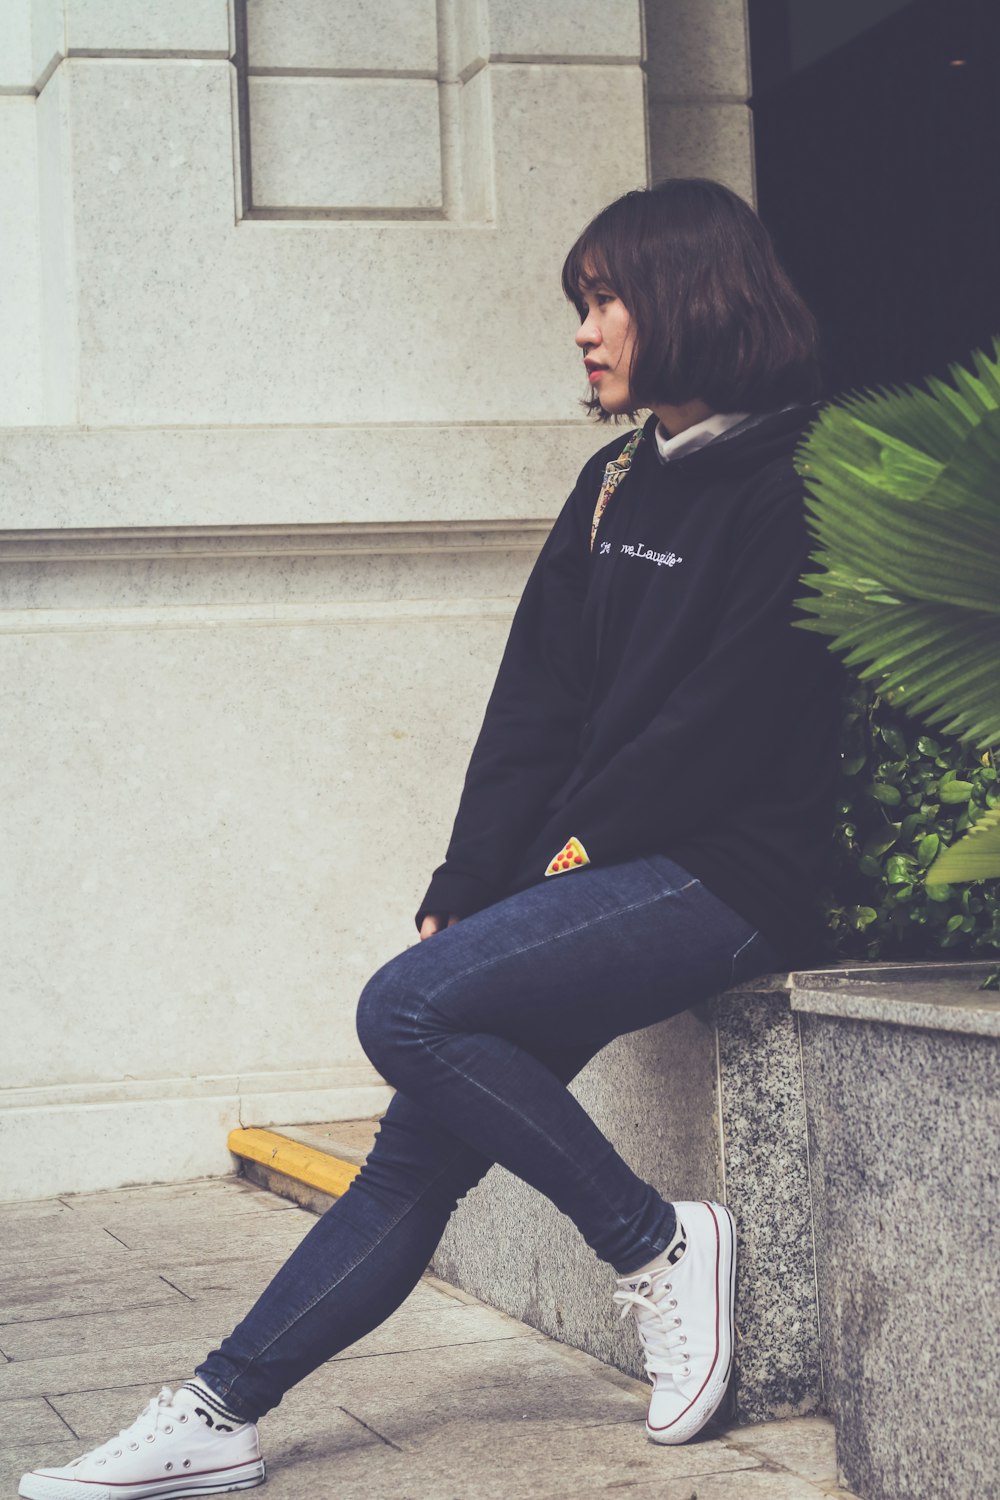 woman sitting on grey concrete pavement